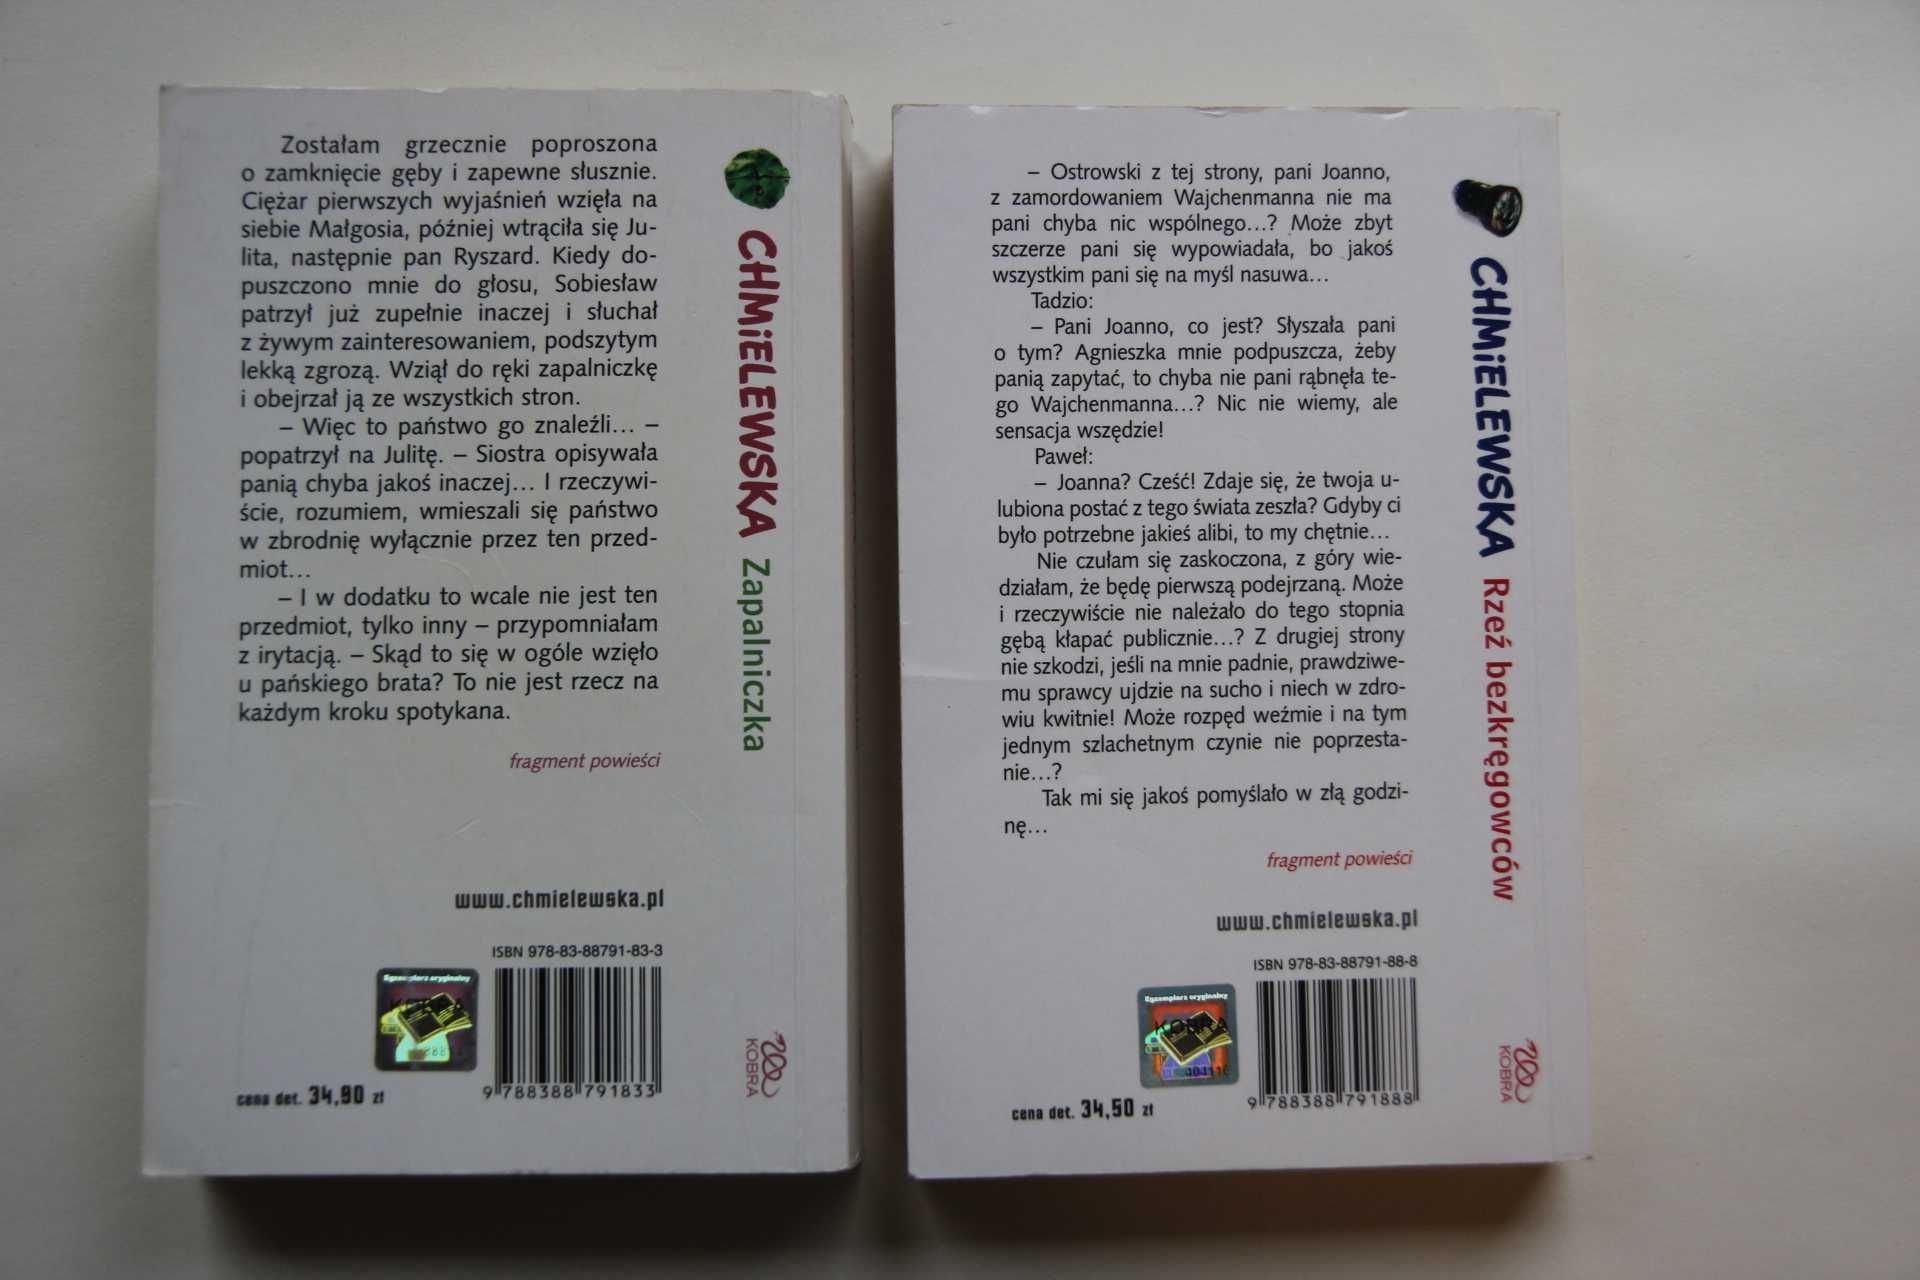 Chmielewska 2 książki Rzeź bezkręgowców i Zapalniczka